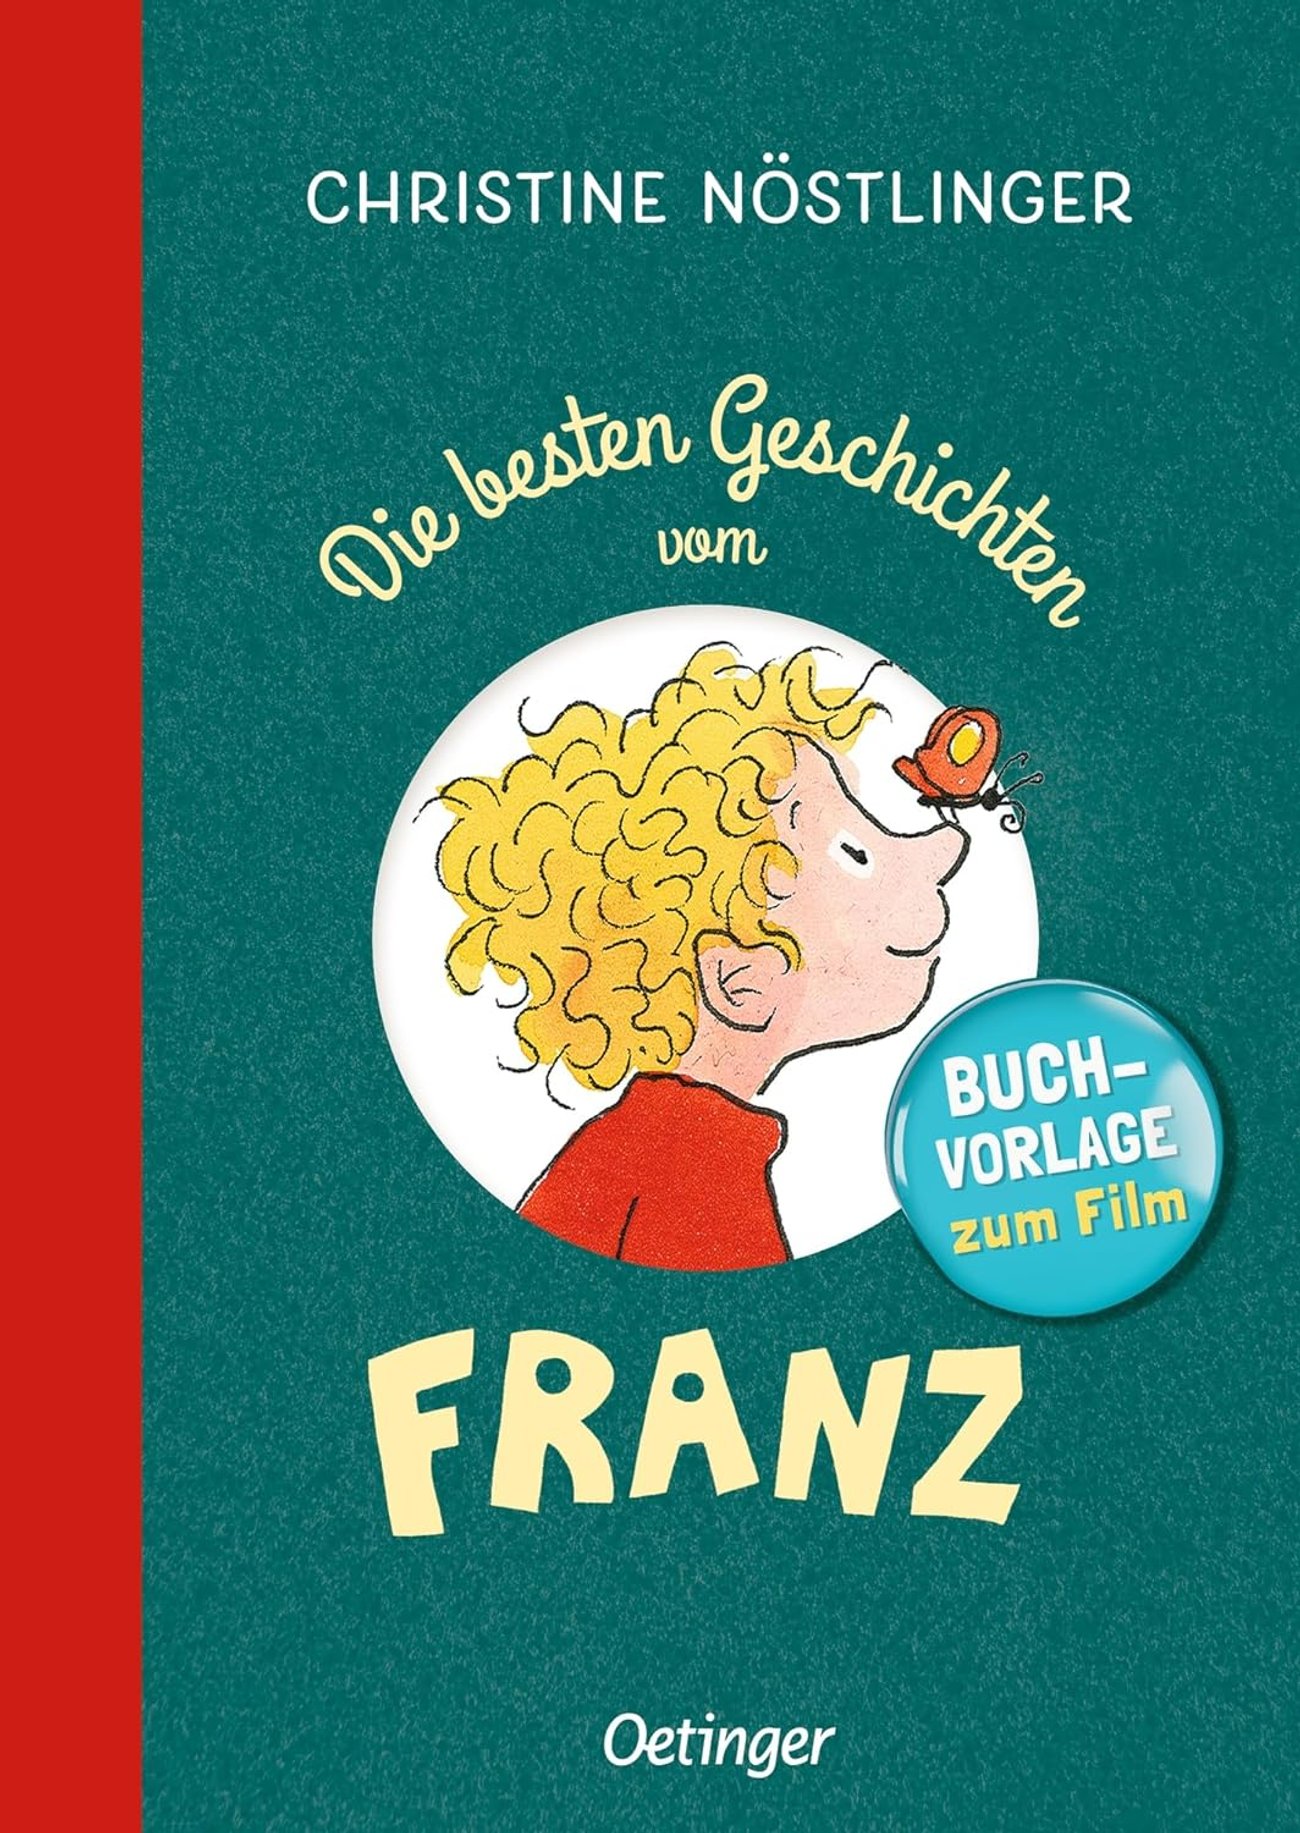 Die besten Geschichten vom Franz: Sammelband